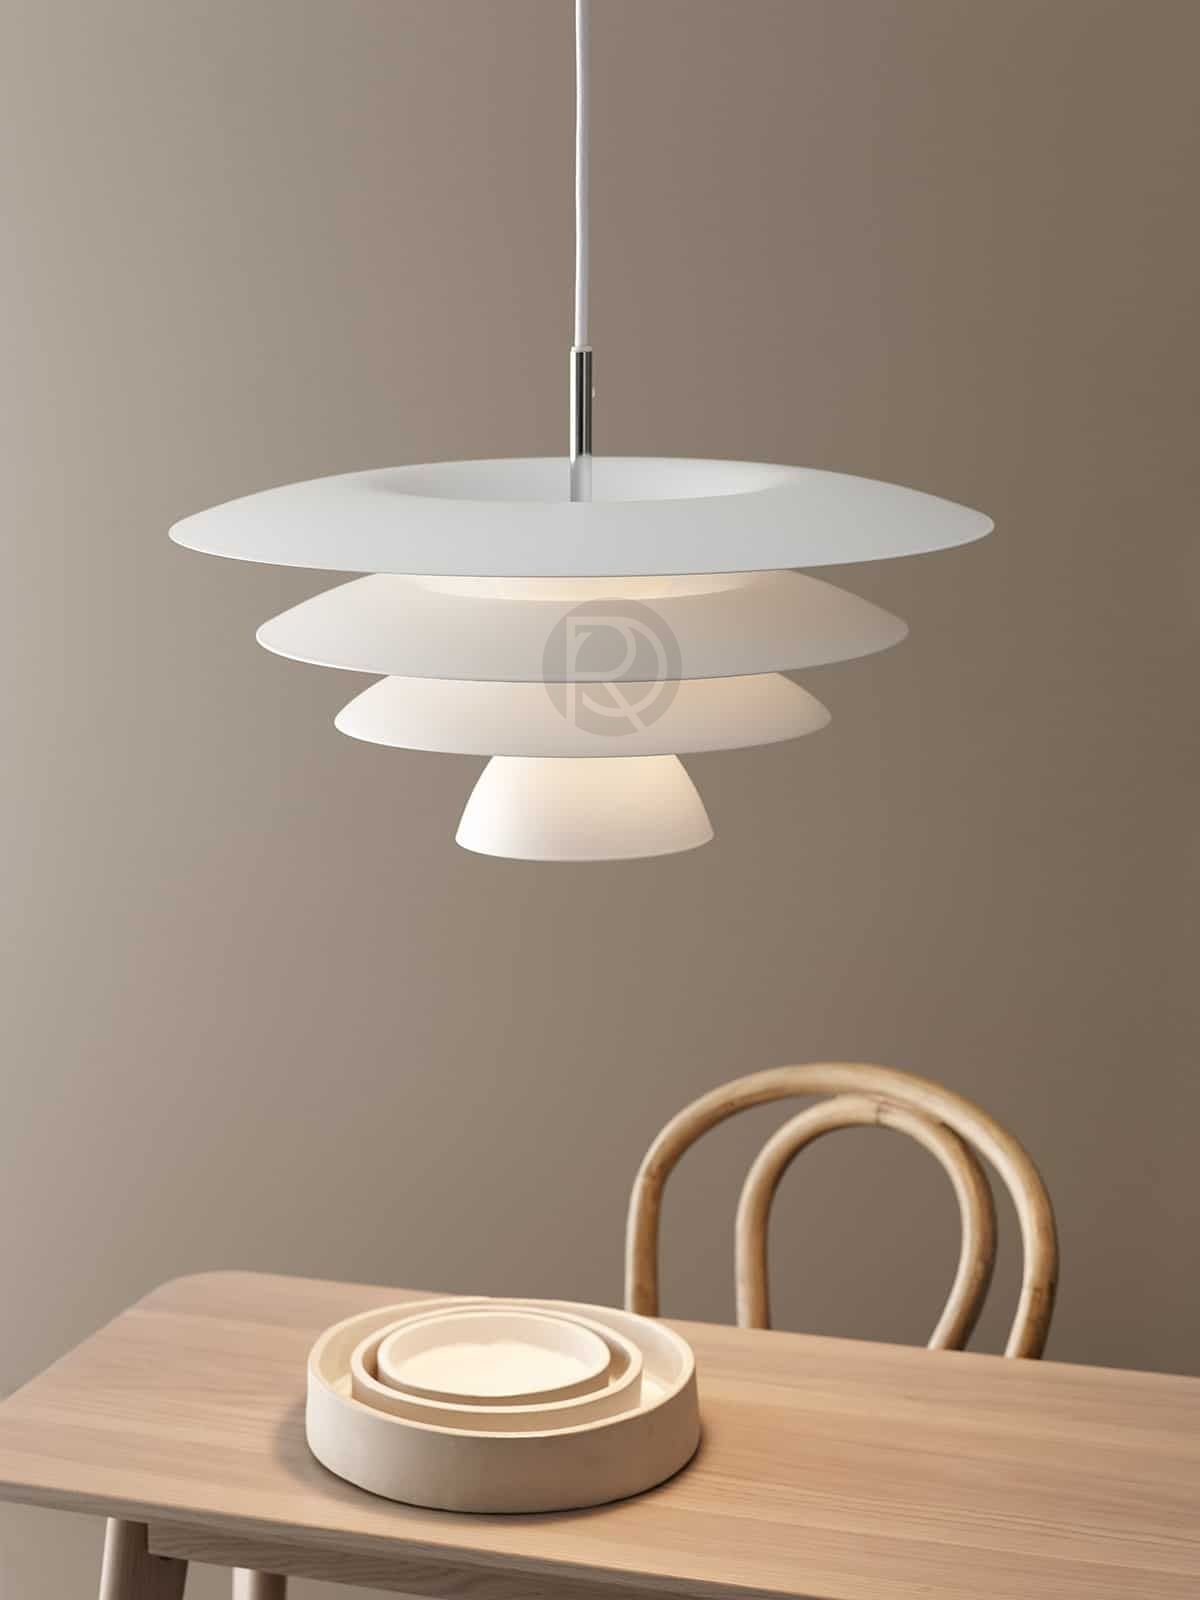 Hanging lamp DA VINCI by Market Set